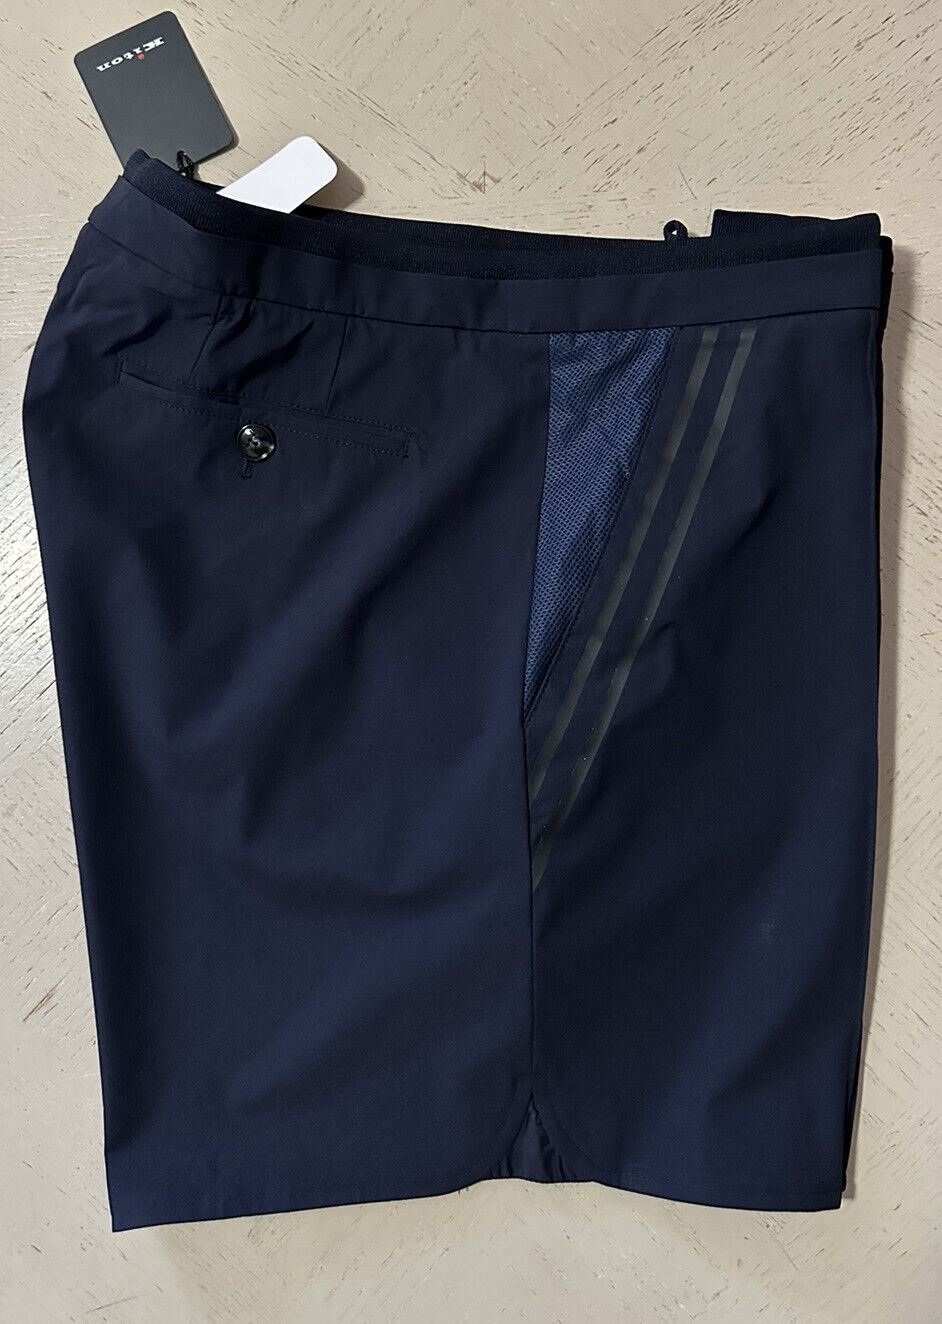 NWT $1395 Мужские нейлоновые короткие шорты Kiton темно-синего цвета, размер 40 США/56 ЕС, Италия